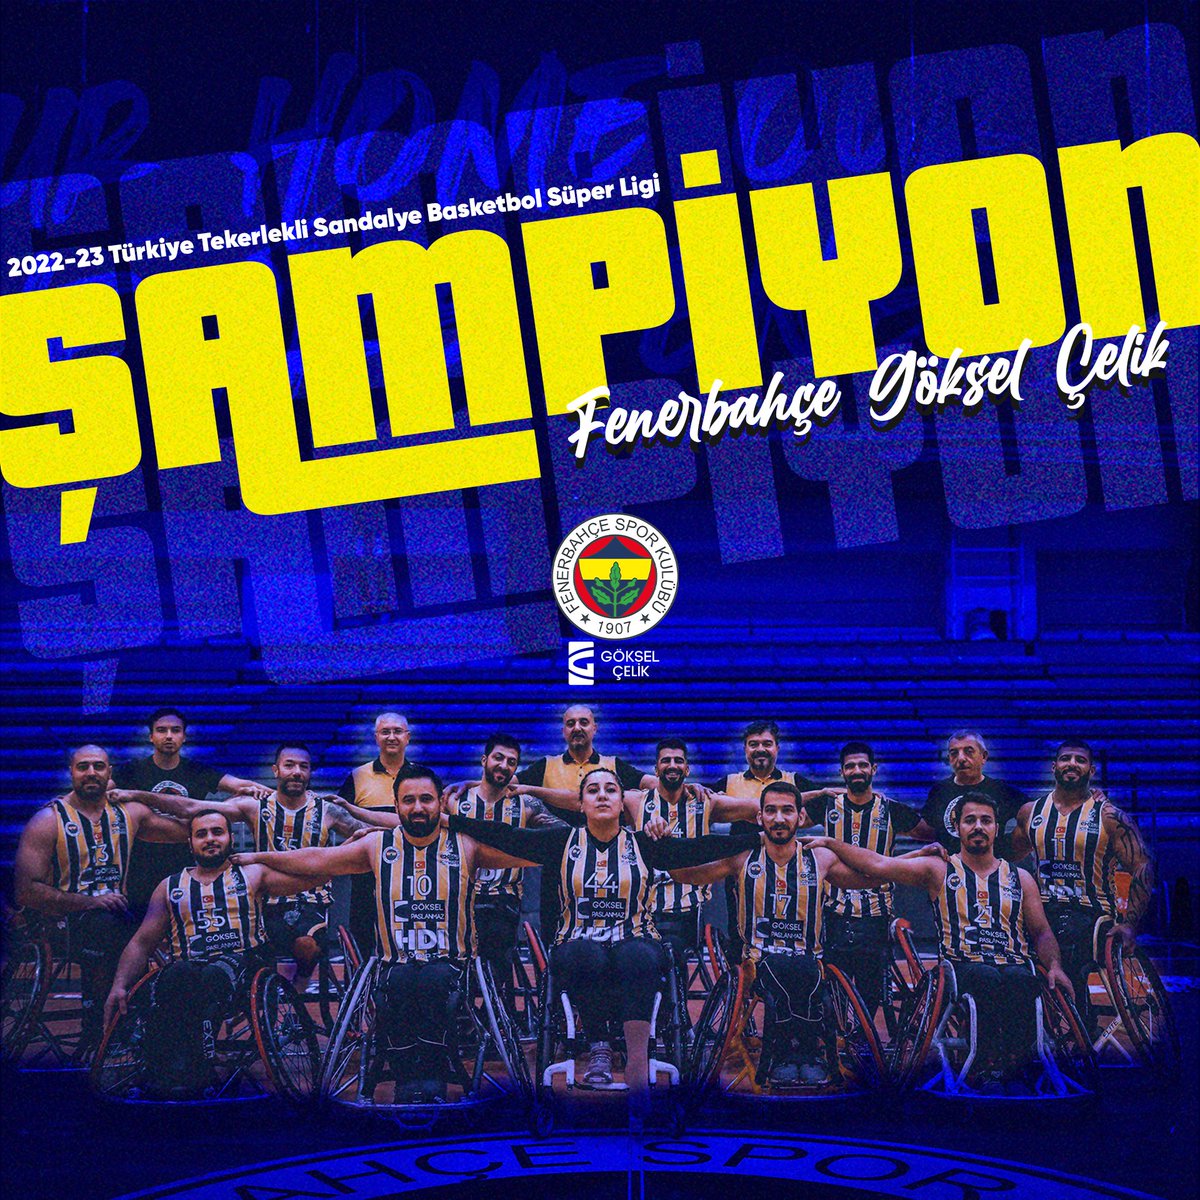 Fenerbahçe göksel çelik tekerlekli sandalye basketbol takımı; Türkiye Tekerlekli Sandalye Basketbol Süper Liginde şampiyon olmuştur. Kendilerini tebrik eder, başarılar dileriz.

@Fenerbahce @Fenerbahcetksb
#WeAreFenerbahçe